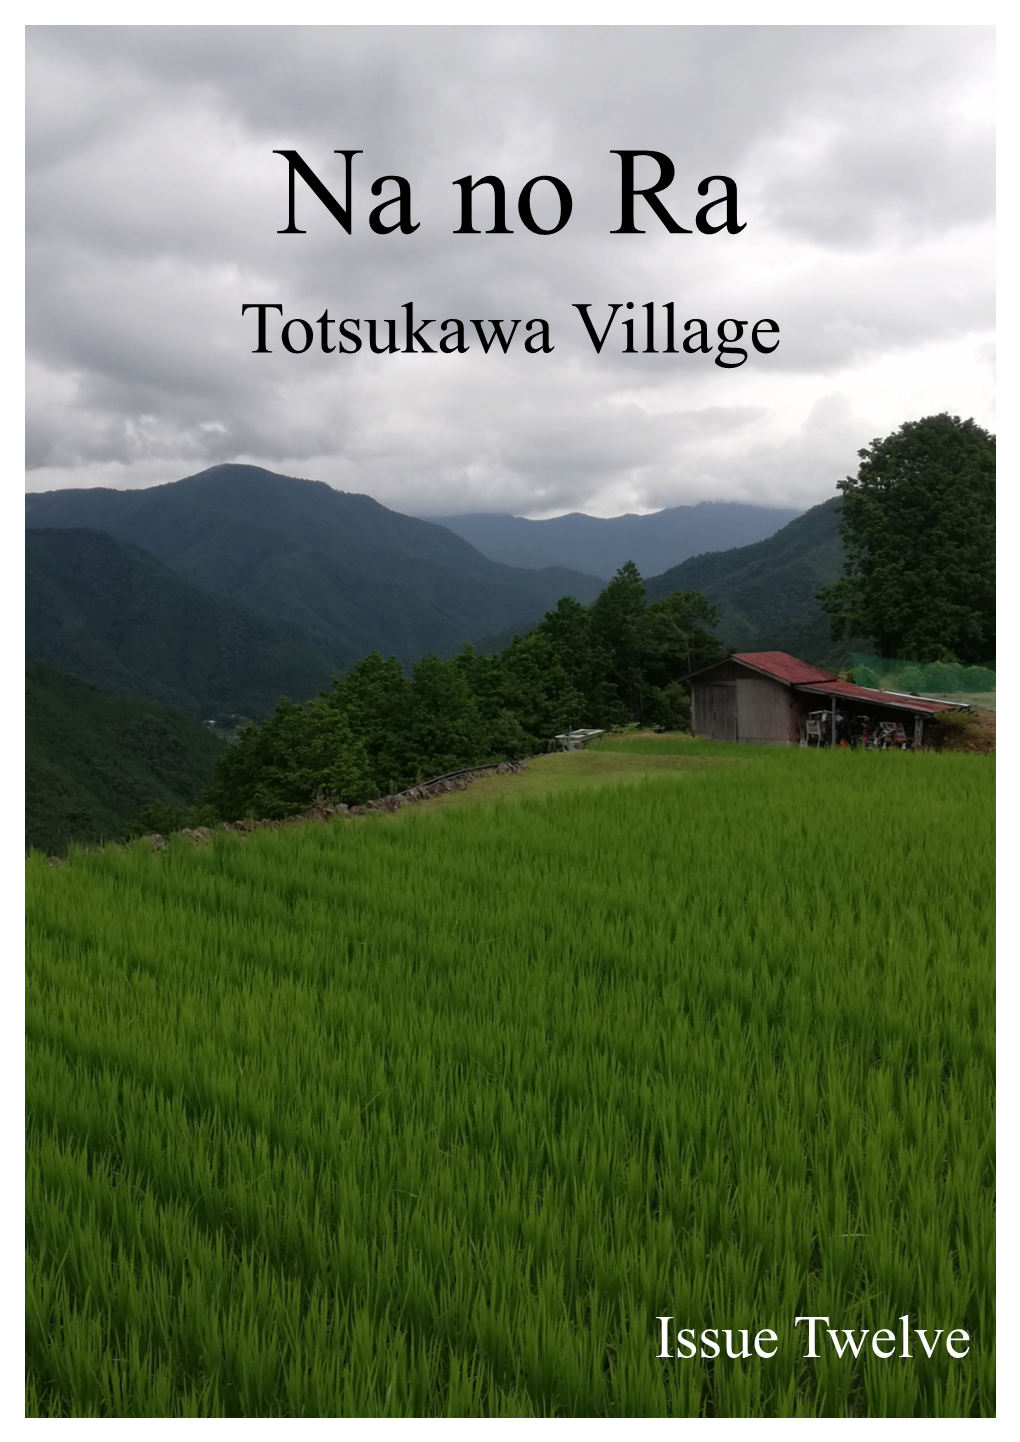 Totsukawa Village